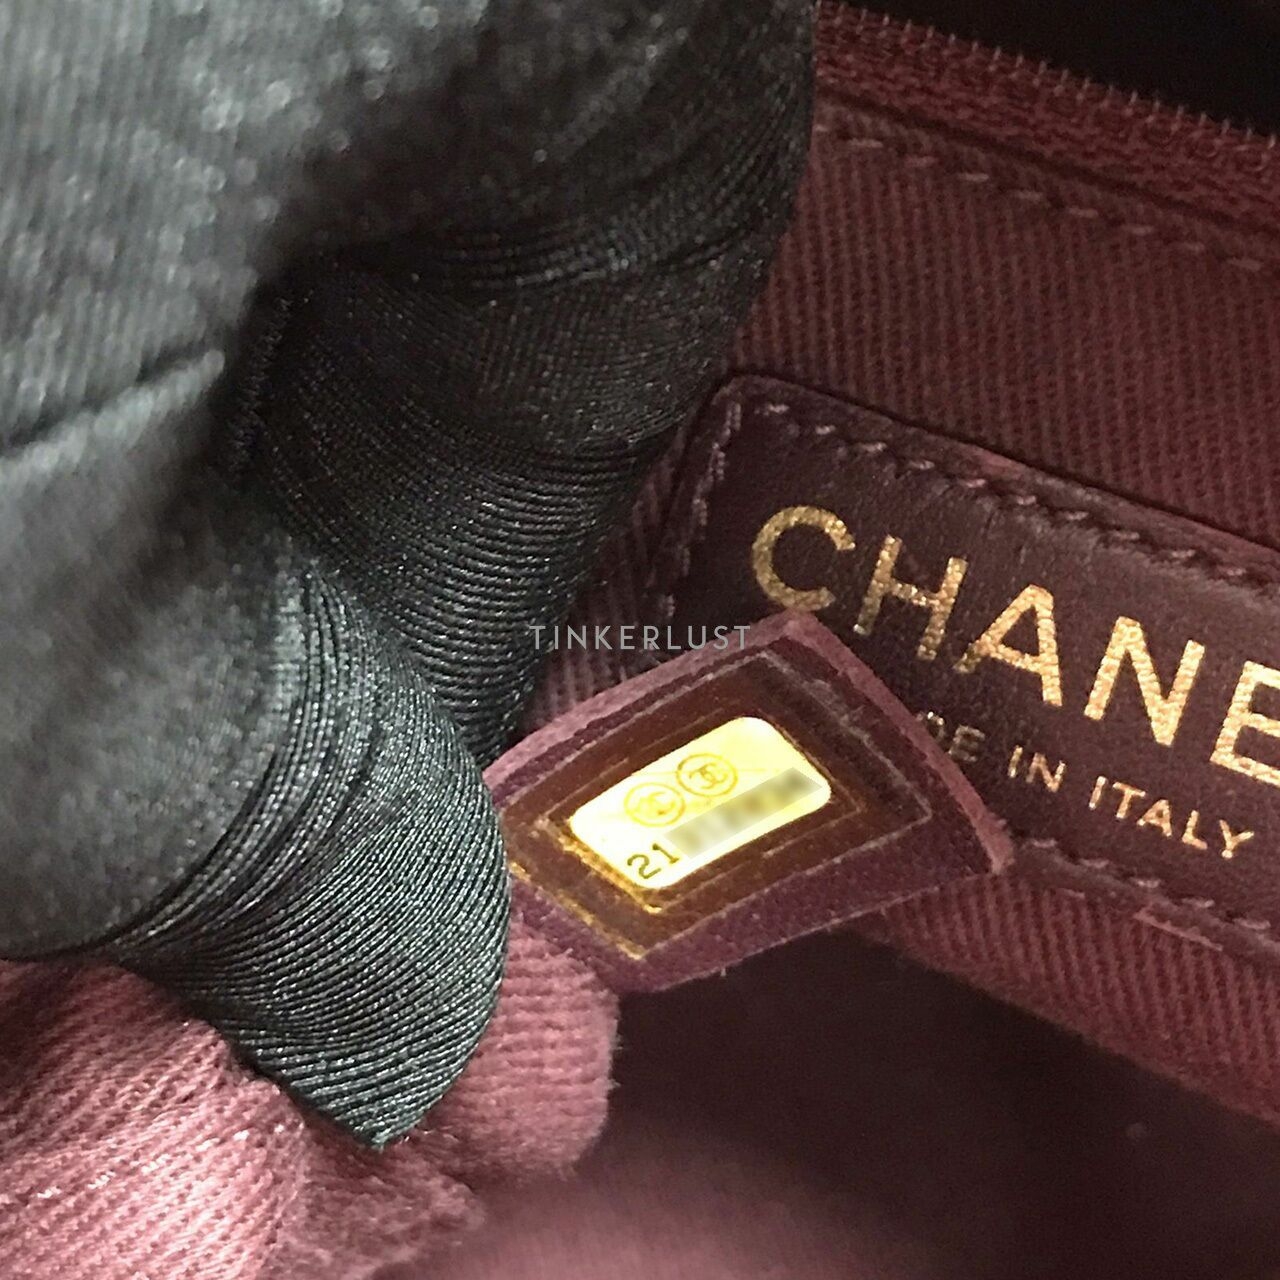 Chanel Camera Calfskin Snake Skin GHW # 21 Shoulder Bag